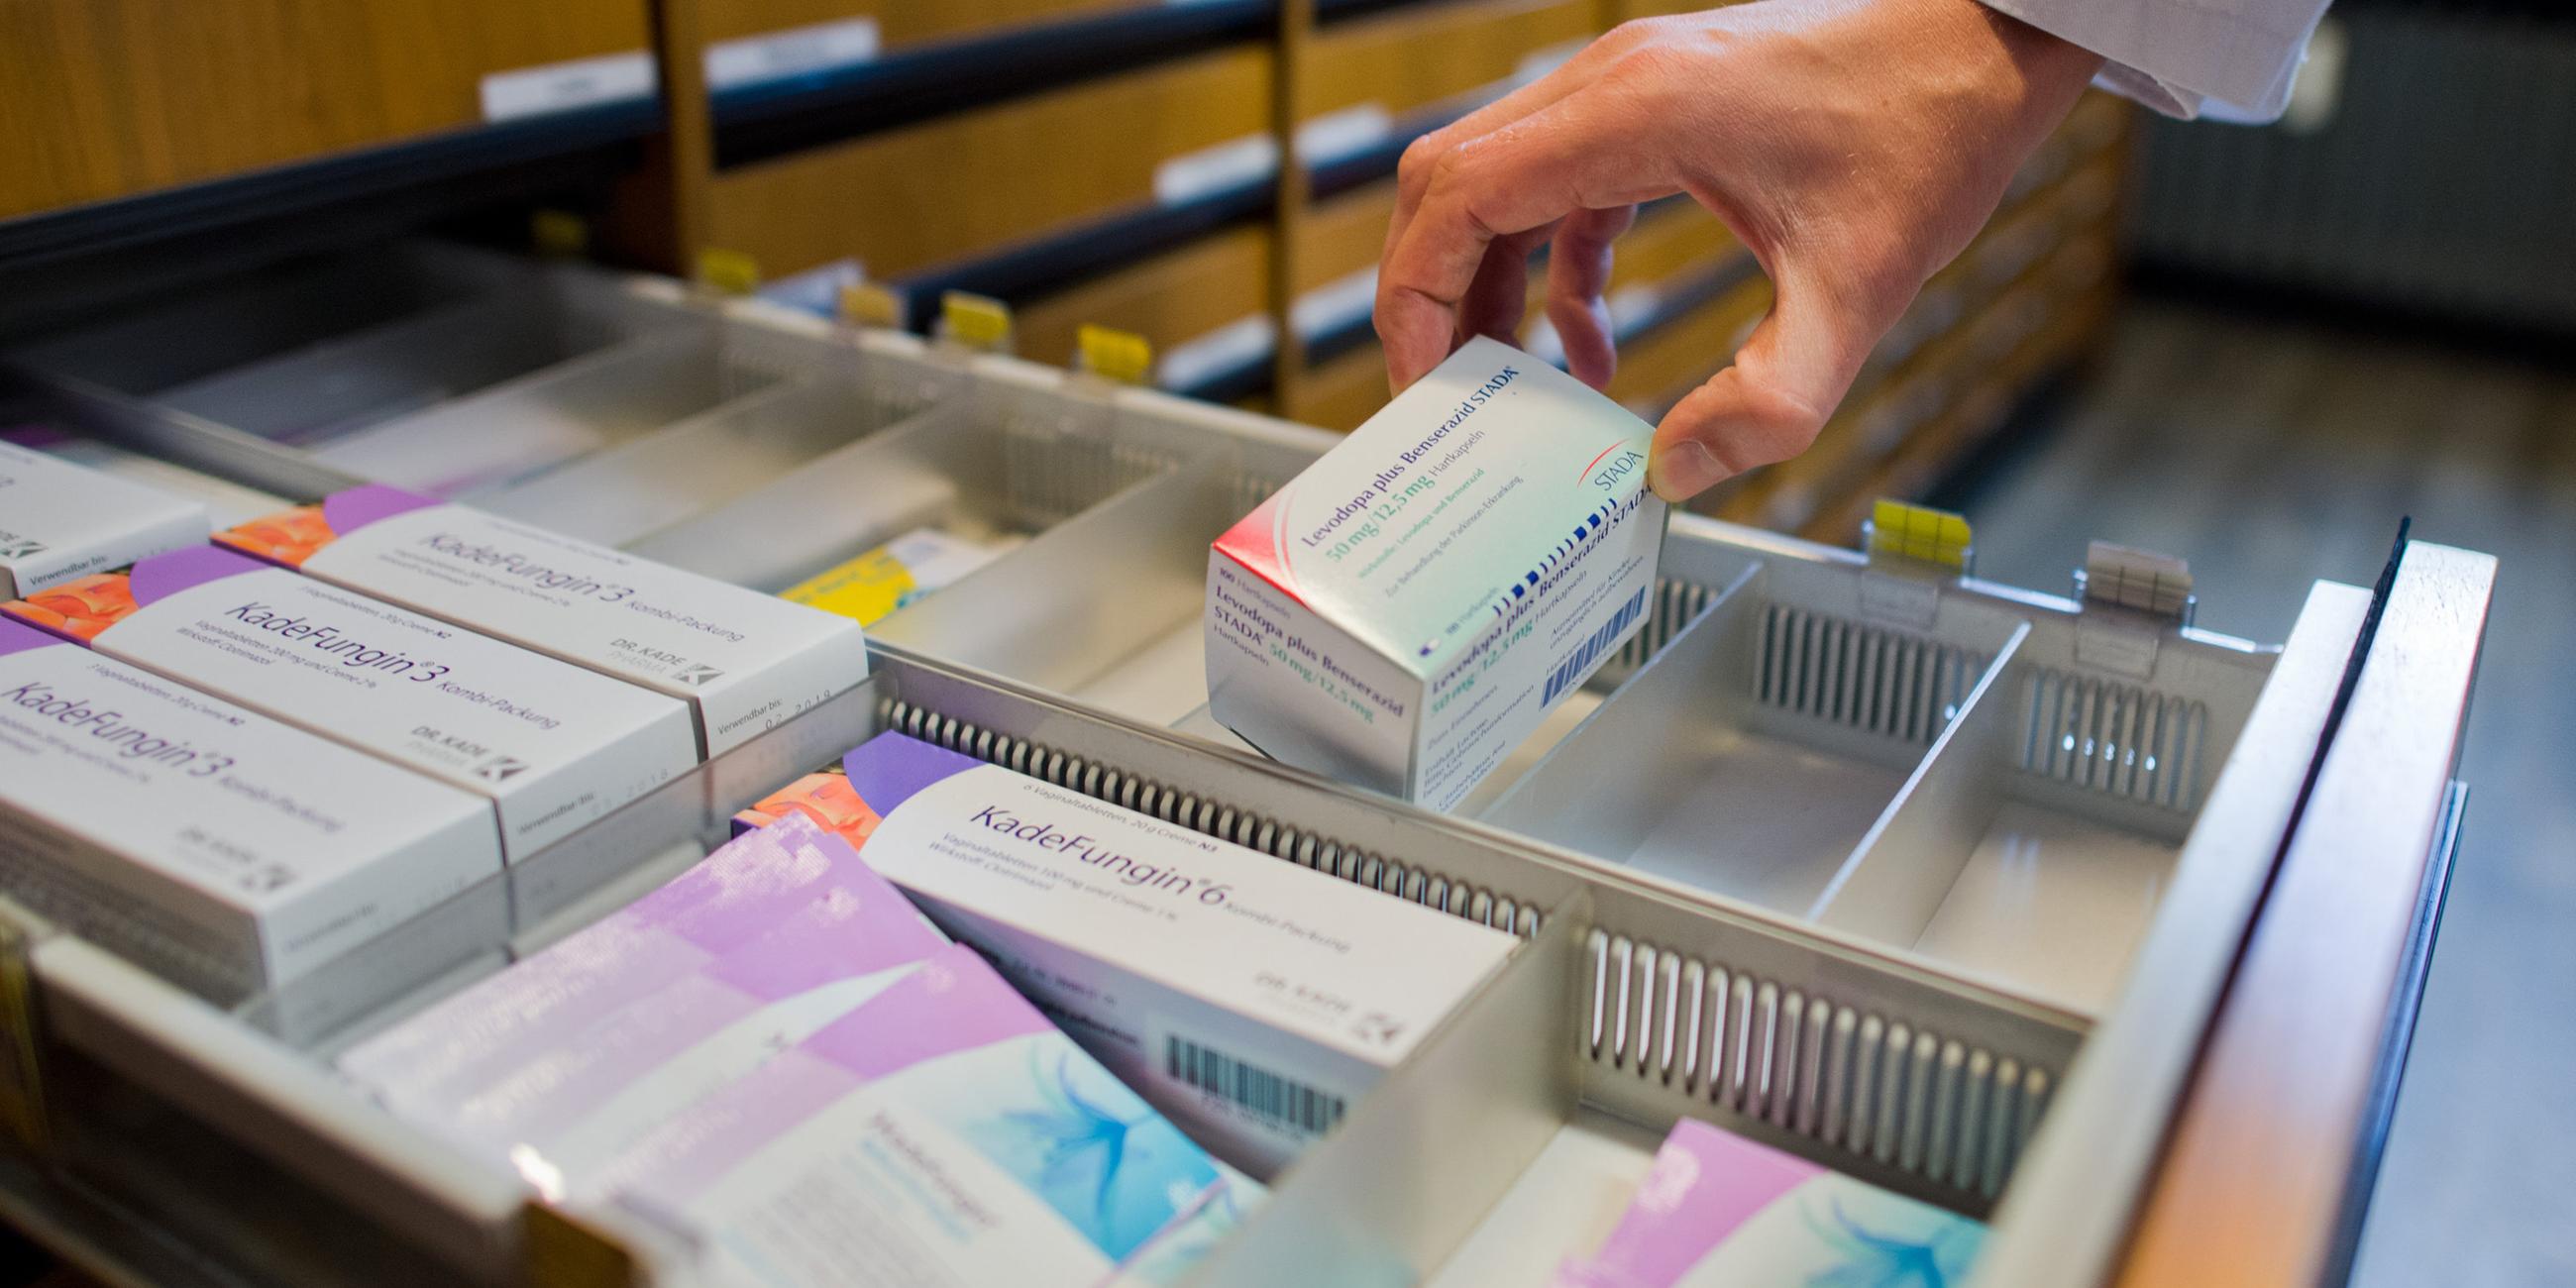 Ein Apotheker nimmt am 19.10.2016 ein verschreibungspflichtiges Medikament zur Behandlung der Parkinson-Erkrankung aus einer Schublade in einer Apotheke in Hannover (Niedersachsen) (gestellte Szene). 